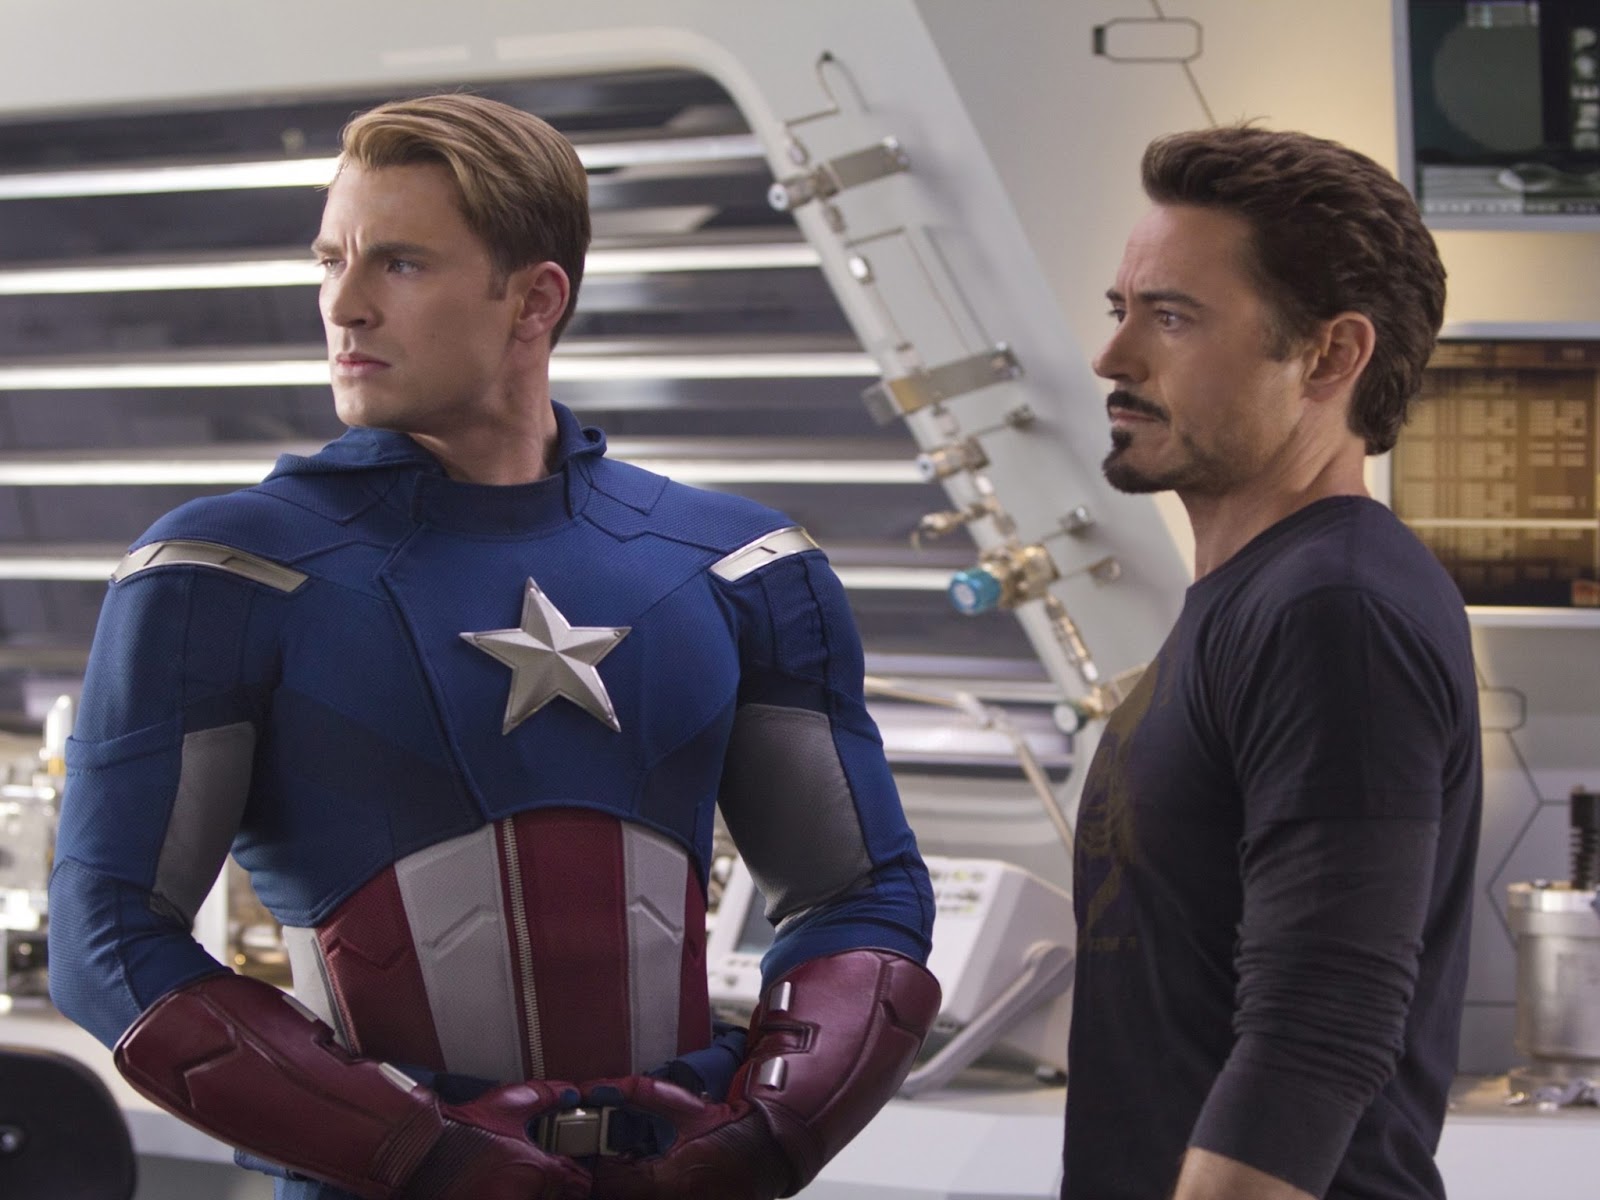 ｃｉａ こちら映画中央情報局です Captain America 3 速報 ロバート ダウニー Jr が出演するマーベルの未知の最新作が キャプテン アメリカ 3 だったことが判明 アイアンマンが悪役として キャップと戦うことになる衝撃の展開